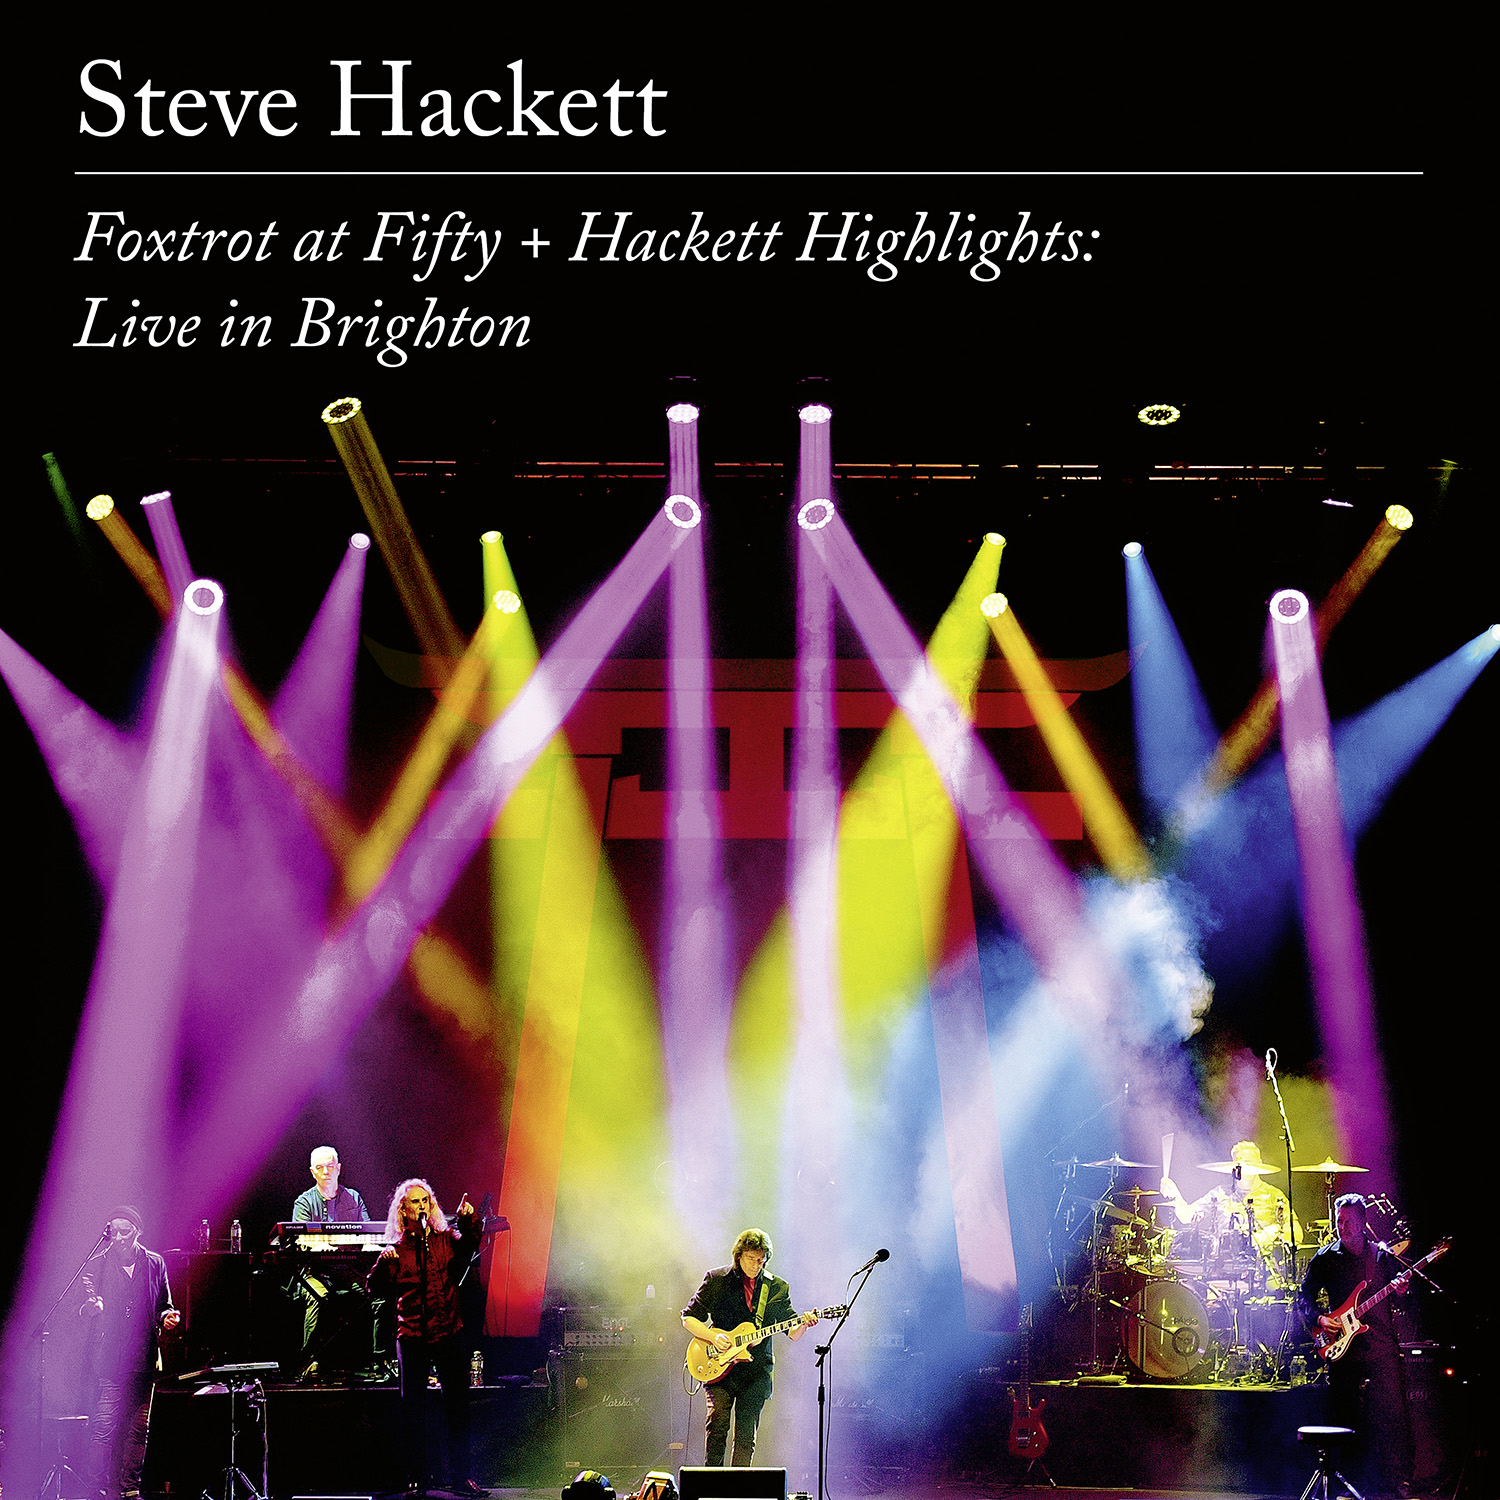 'Foxtrot at Fifty + Hackett Highlights: Live in Brighton - STEVE HACKETT